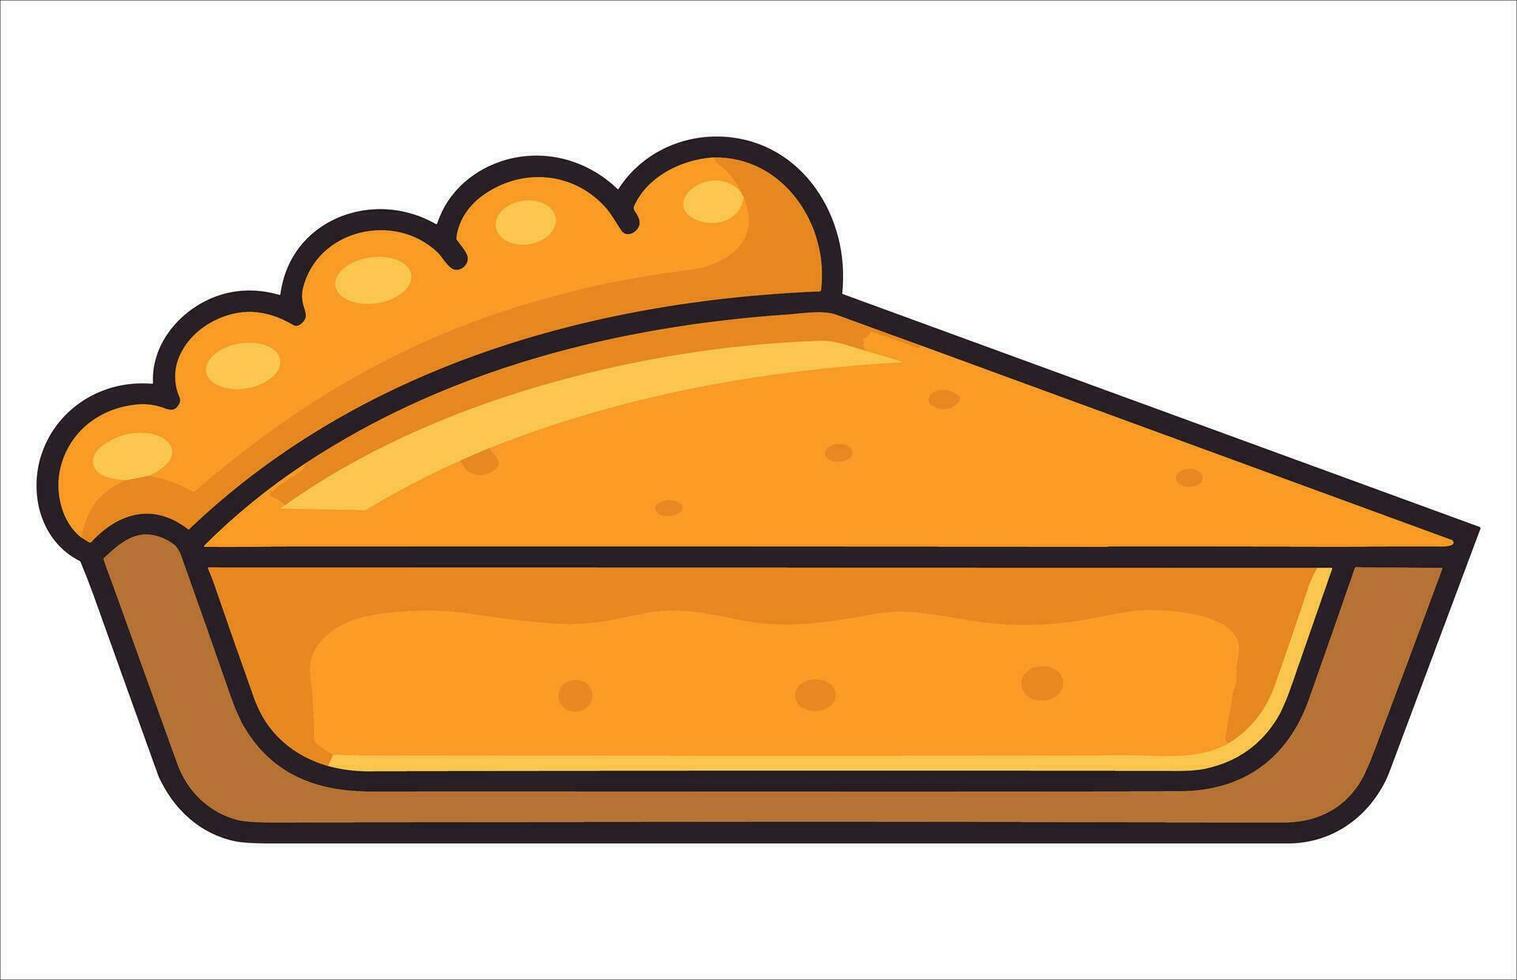 pompoen taart vector illustratie, een geheel taart, een plak, en een geheel taart met een plak missend